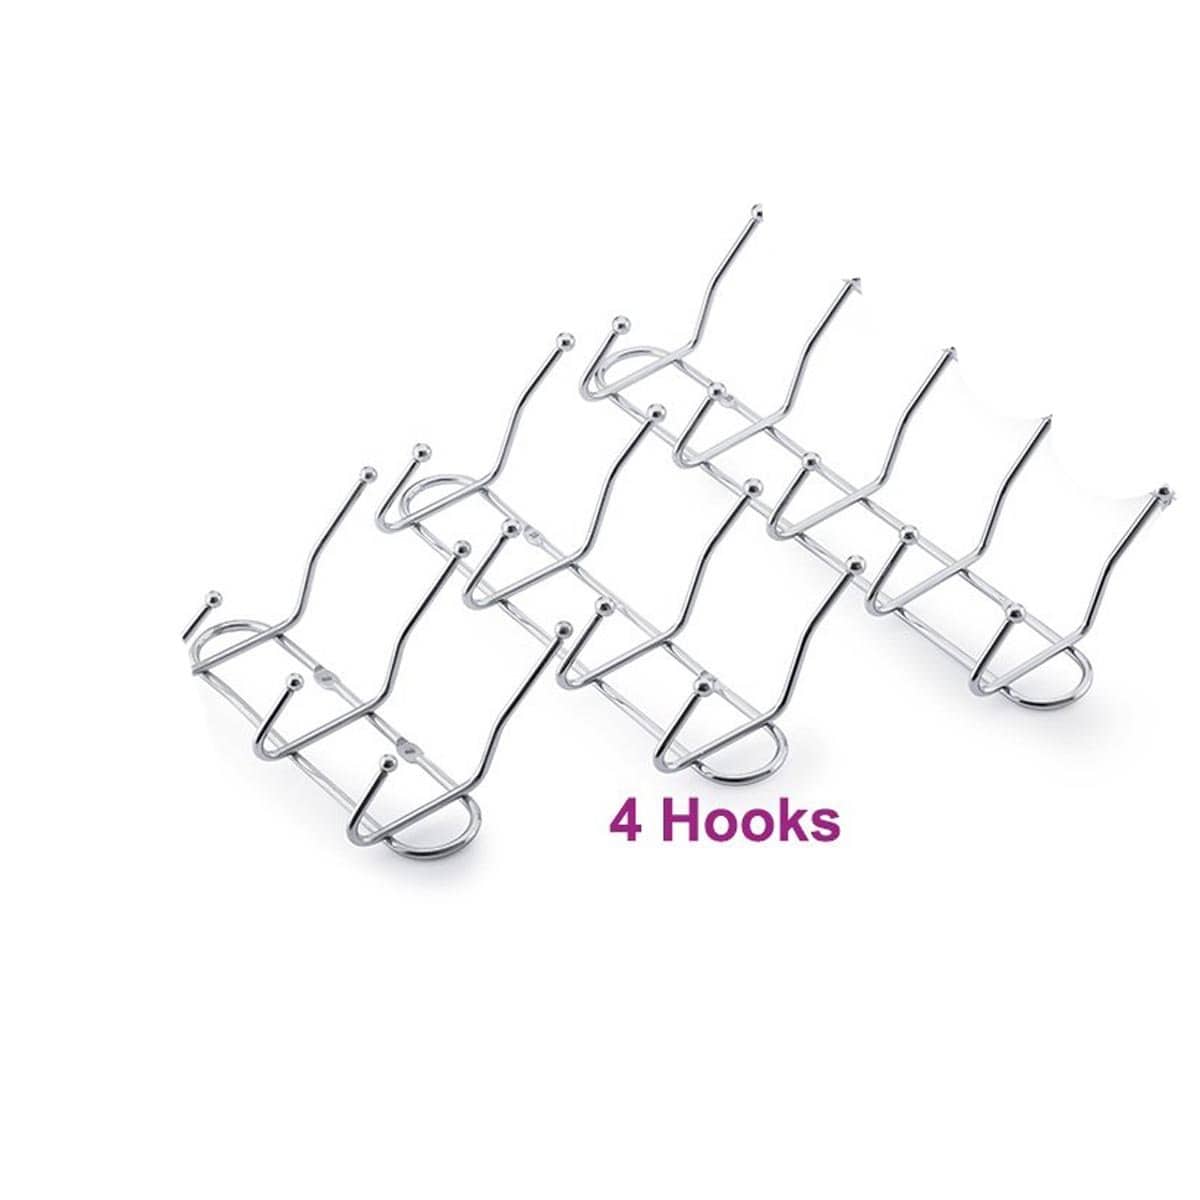 NB646 4 Hooks S/S Line Hook